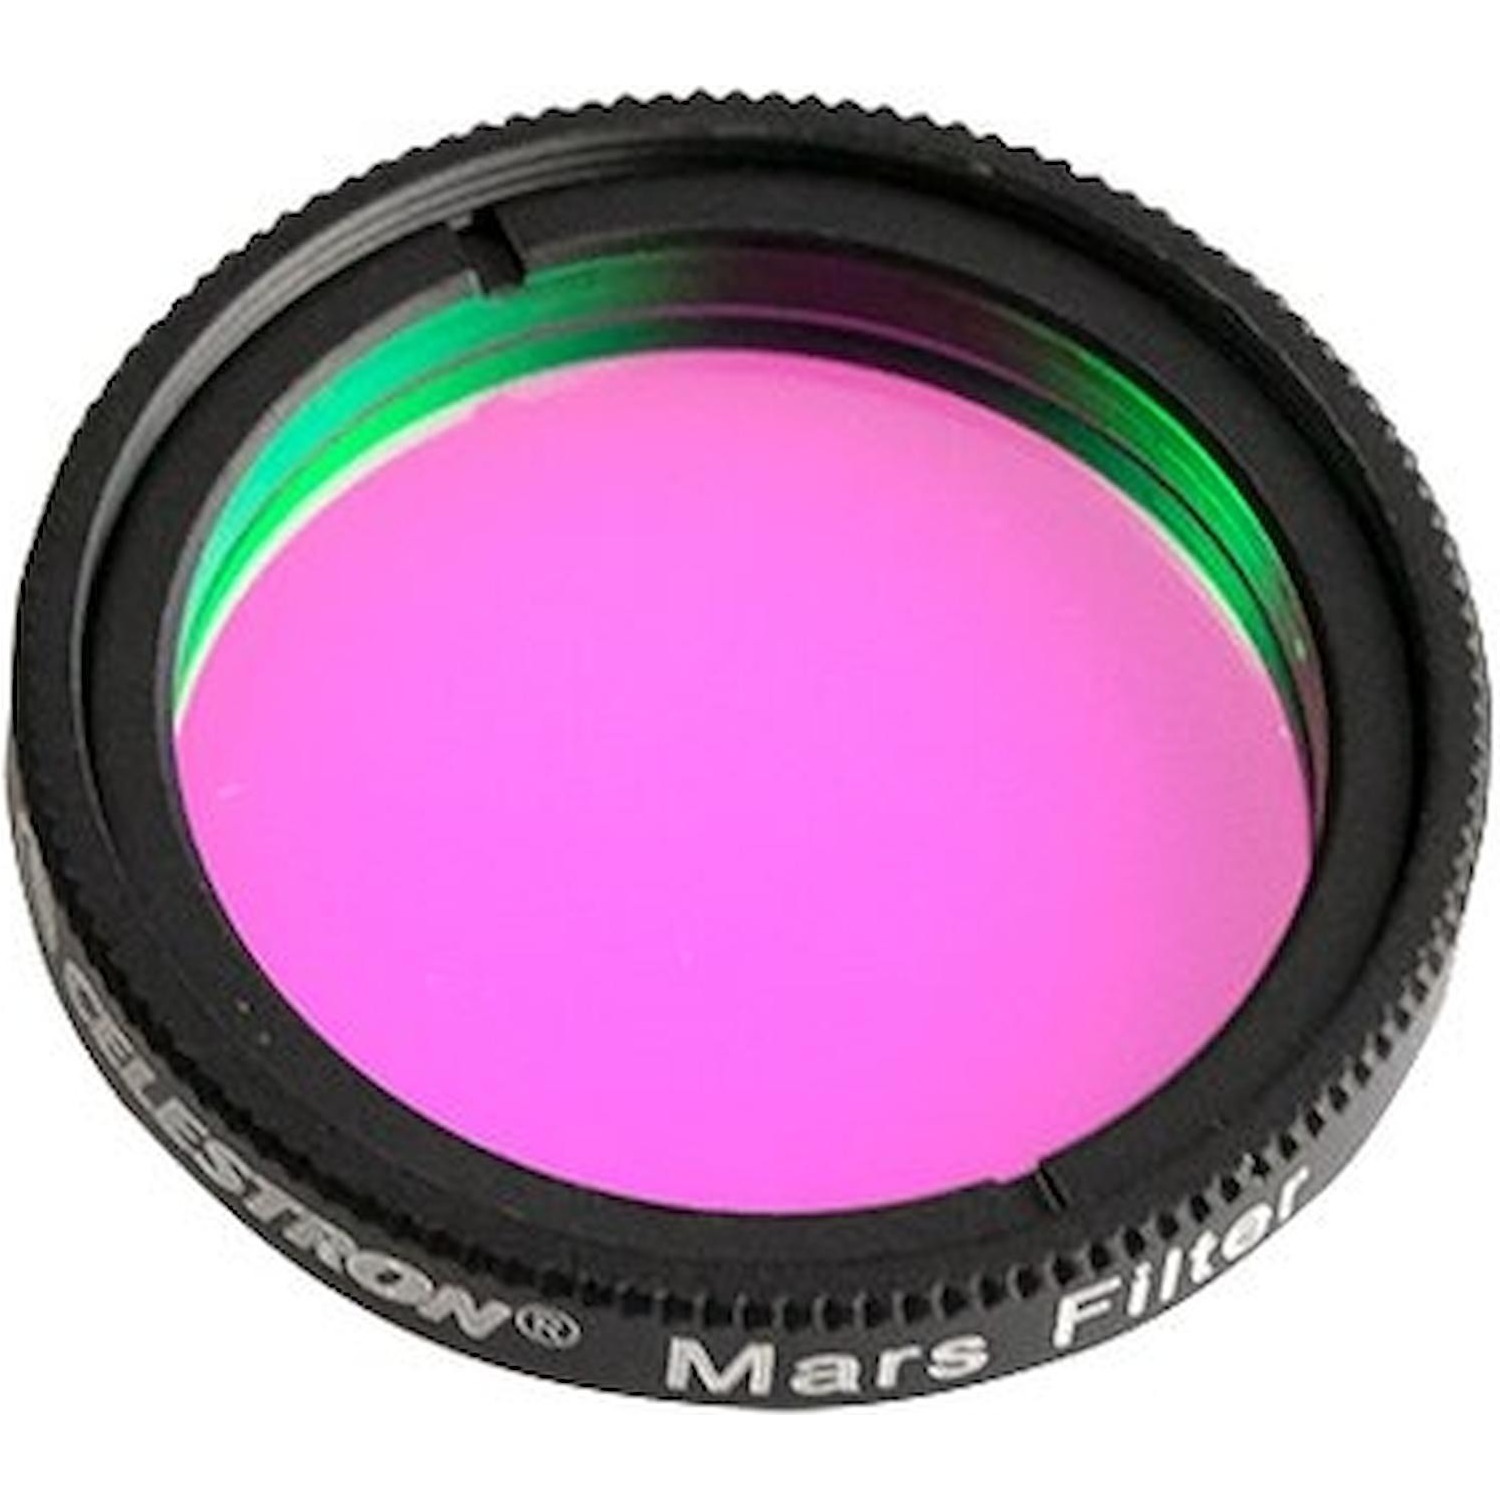 Immagine per Filtro per Marte 31,8mm Celestron da DIMOStore